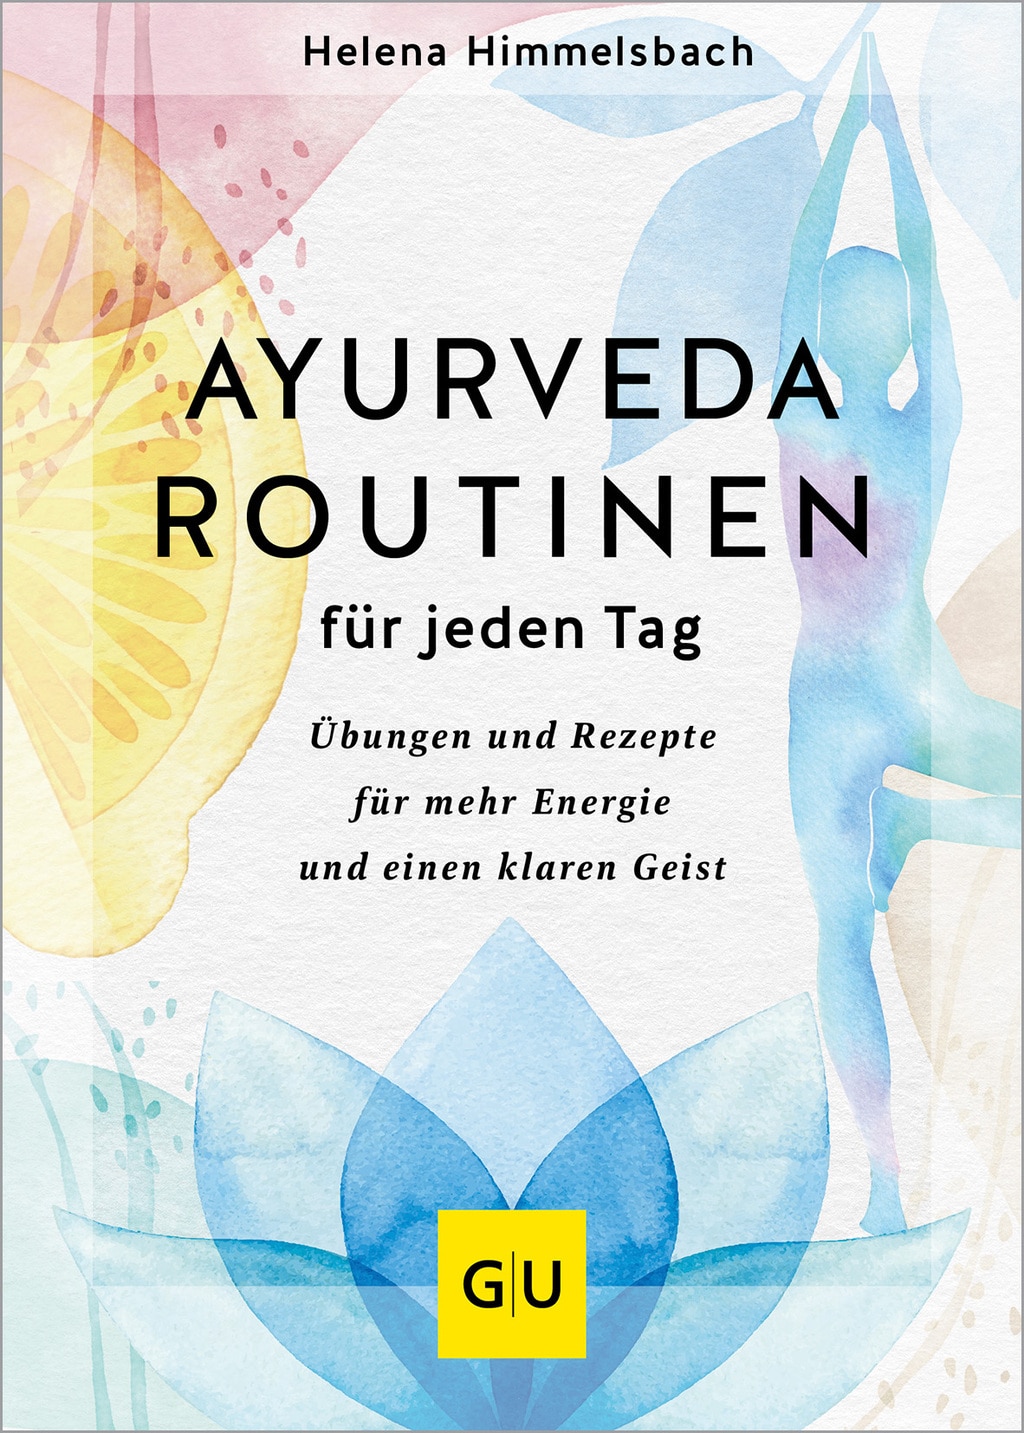 Der Buchumschlag von "Ayurveda Routinen für jeden Tag" von Helena Himmelsbach zeigt einen farbenfrohen Hintergrund mit abstrakten Aquarell-Illustrationen von Früchten und einer Lotusblume. 